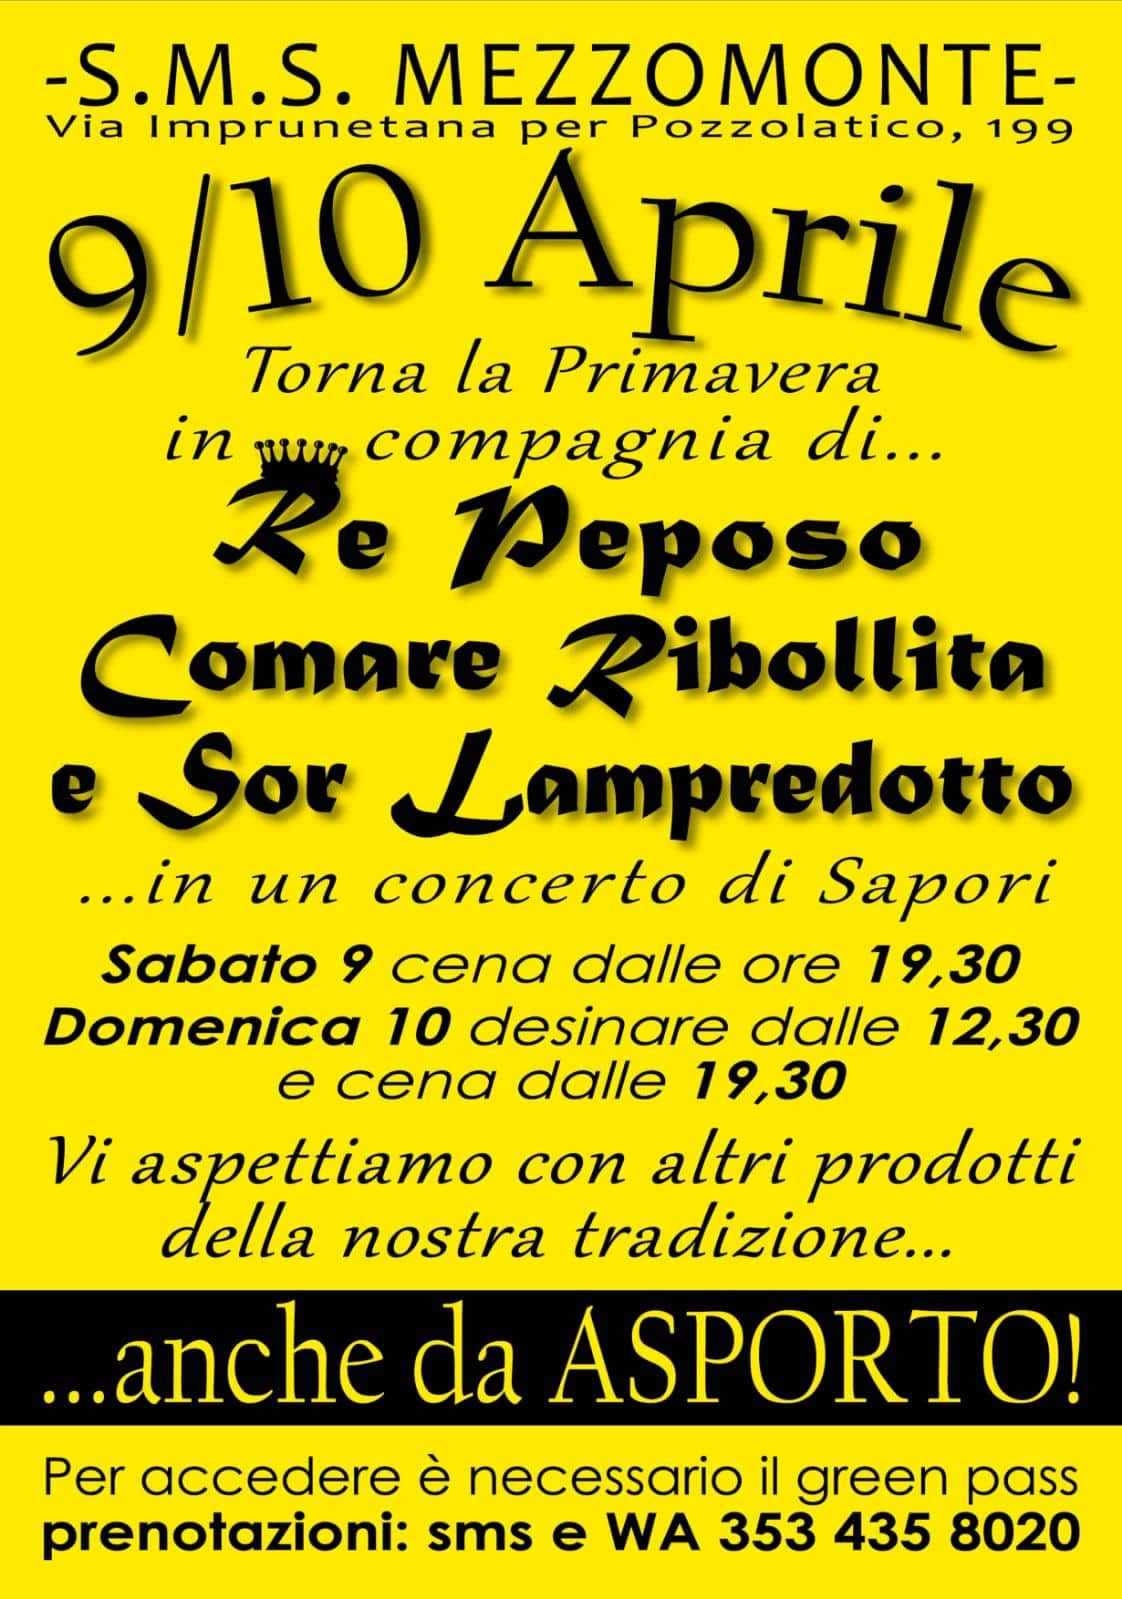 Impruneta (FI)
"Re Peposo, Comare Ribollita e Sor Lampredotto"
9-10 Aprile 2022